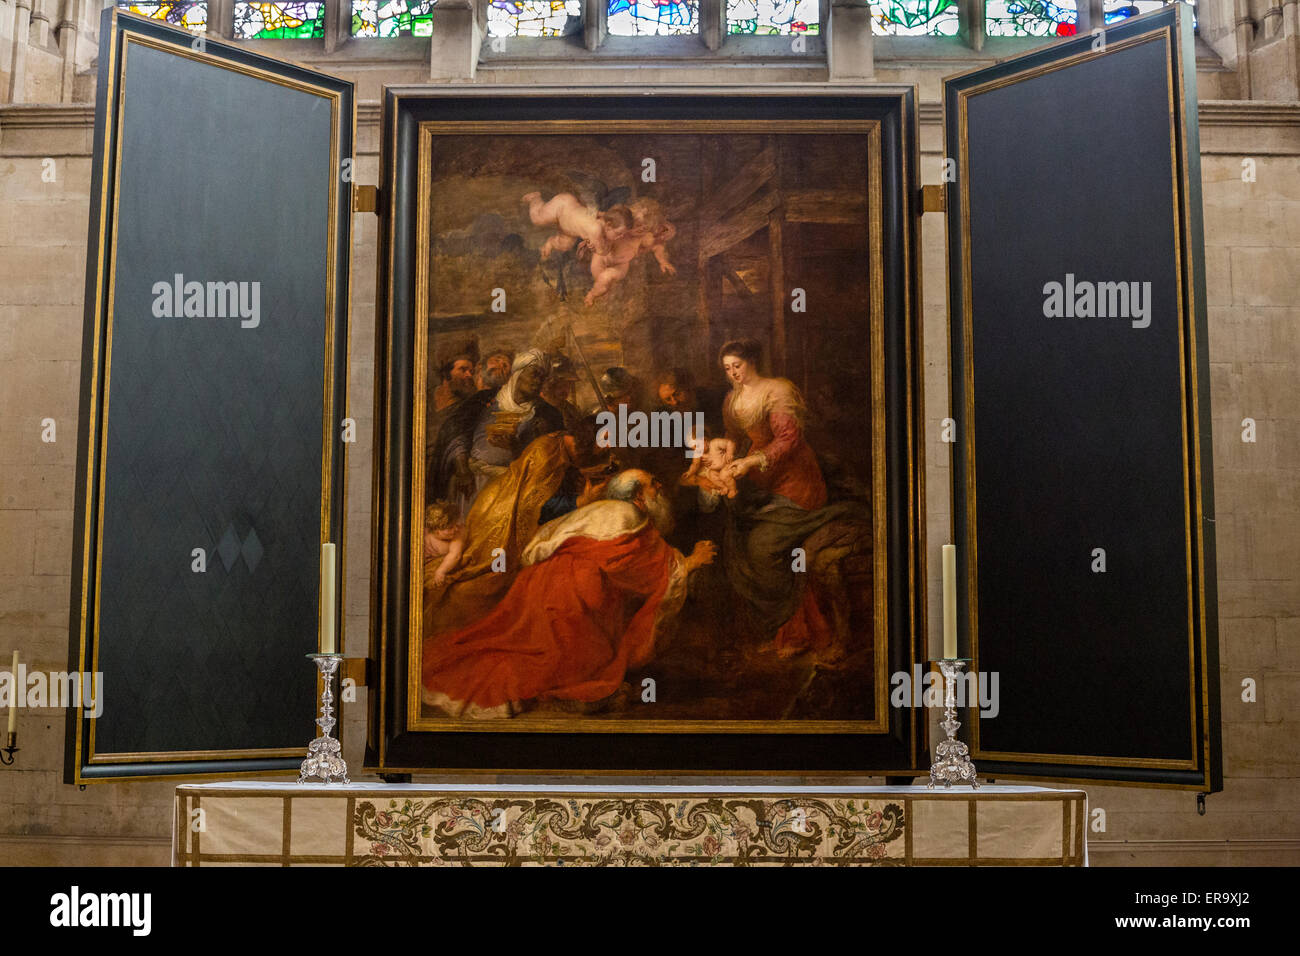 Reino Unido, Inglaterra, Cambridge. La capilla de King's College, la adoración de los magos, de Peter Paul Rubens, 1634. Foto de stock